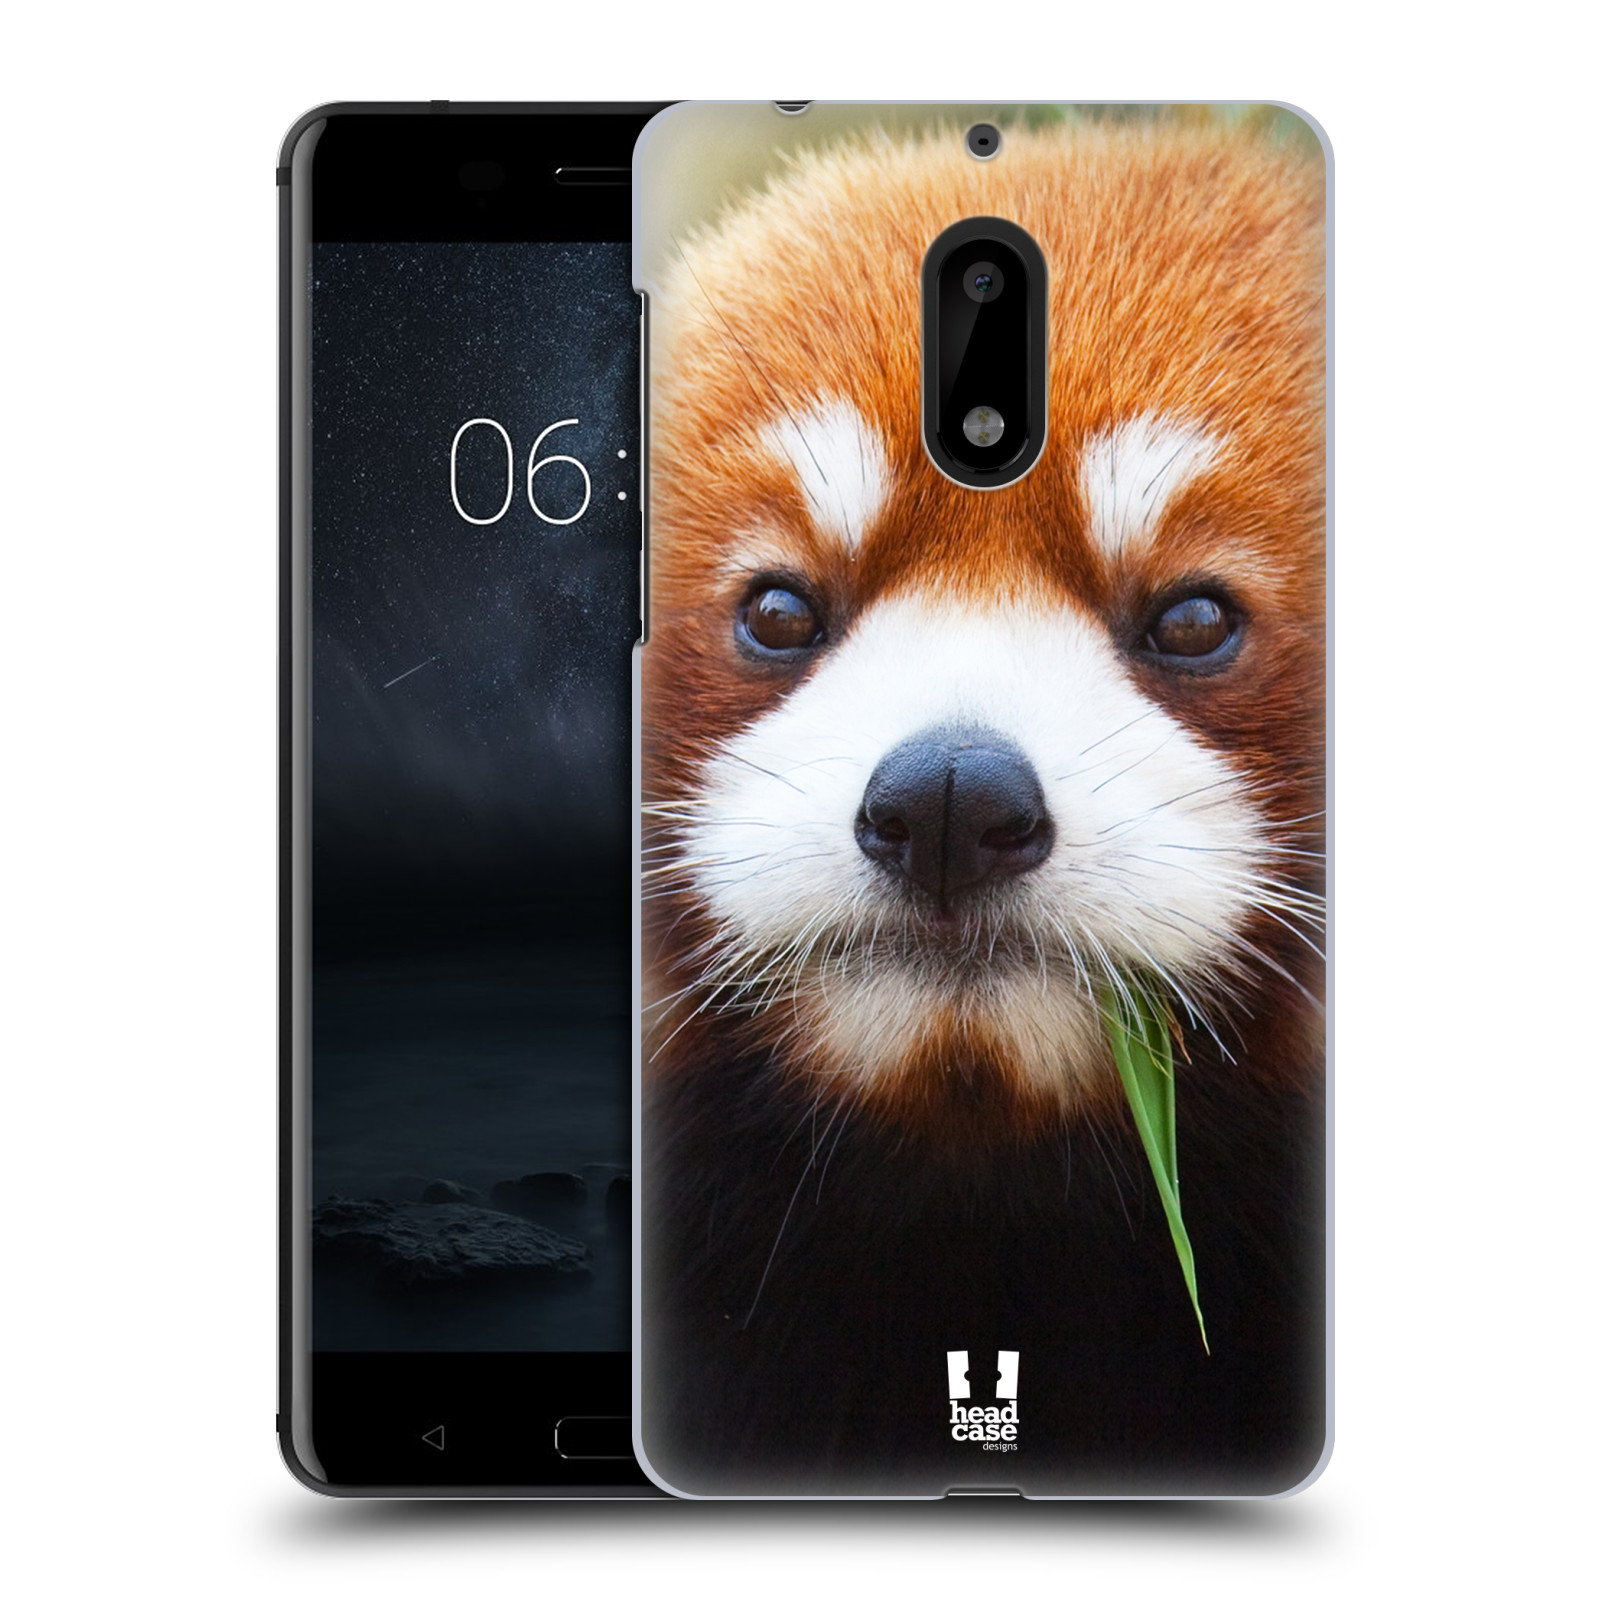 HEAD CASE plastový obal na mobil Nokia 6 vzor Divočina, Divoký život a zvířata foto PANDA HNĚDÁ